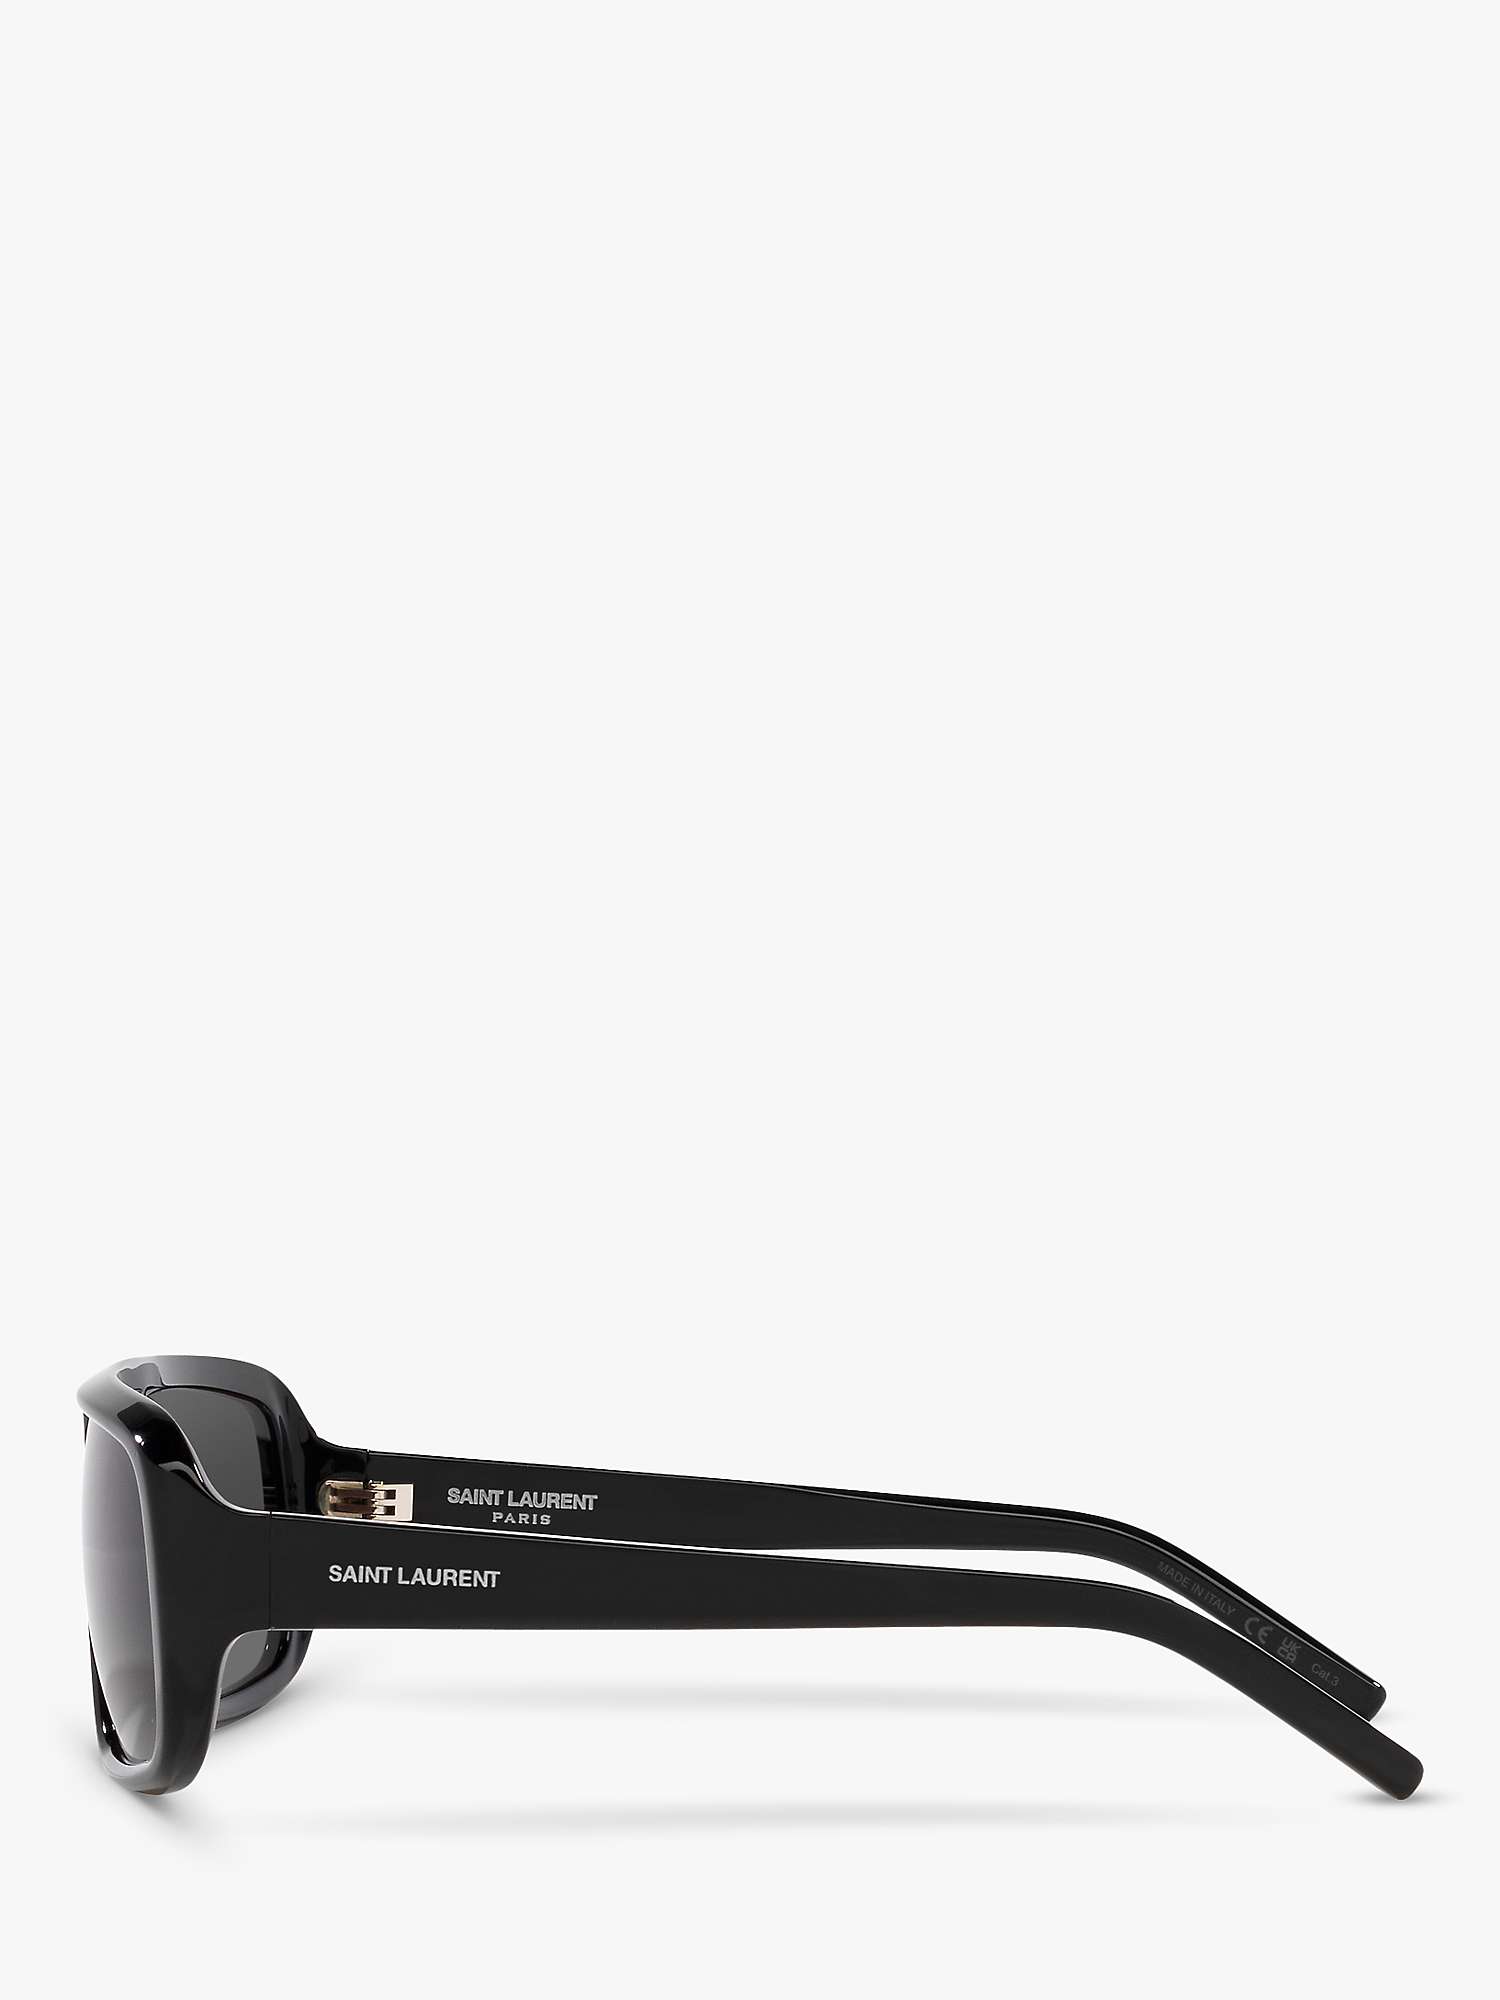 Buy Yves Saint Laurent YS000434 Women's Rectangular Sunglasses, Black Online at johnlewis.com